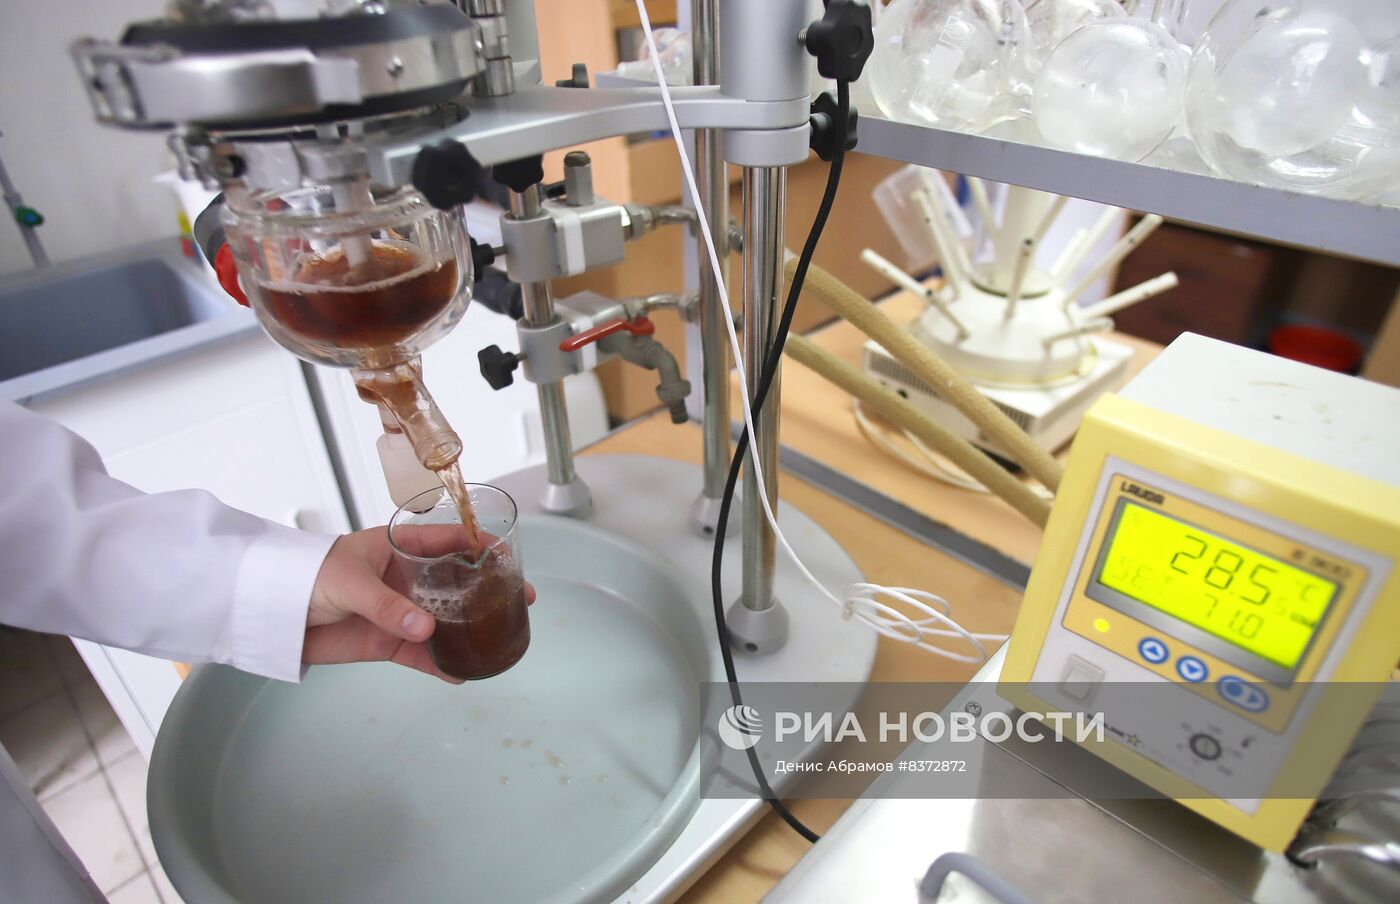 Разработка российского препарата для КТ и МРТ-исследований